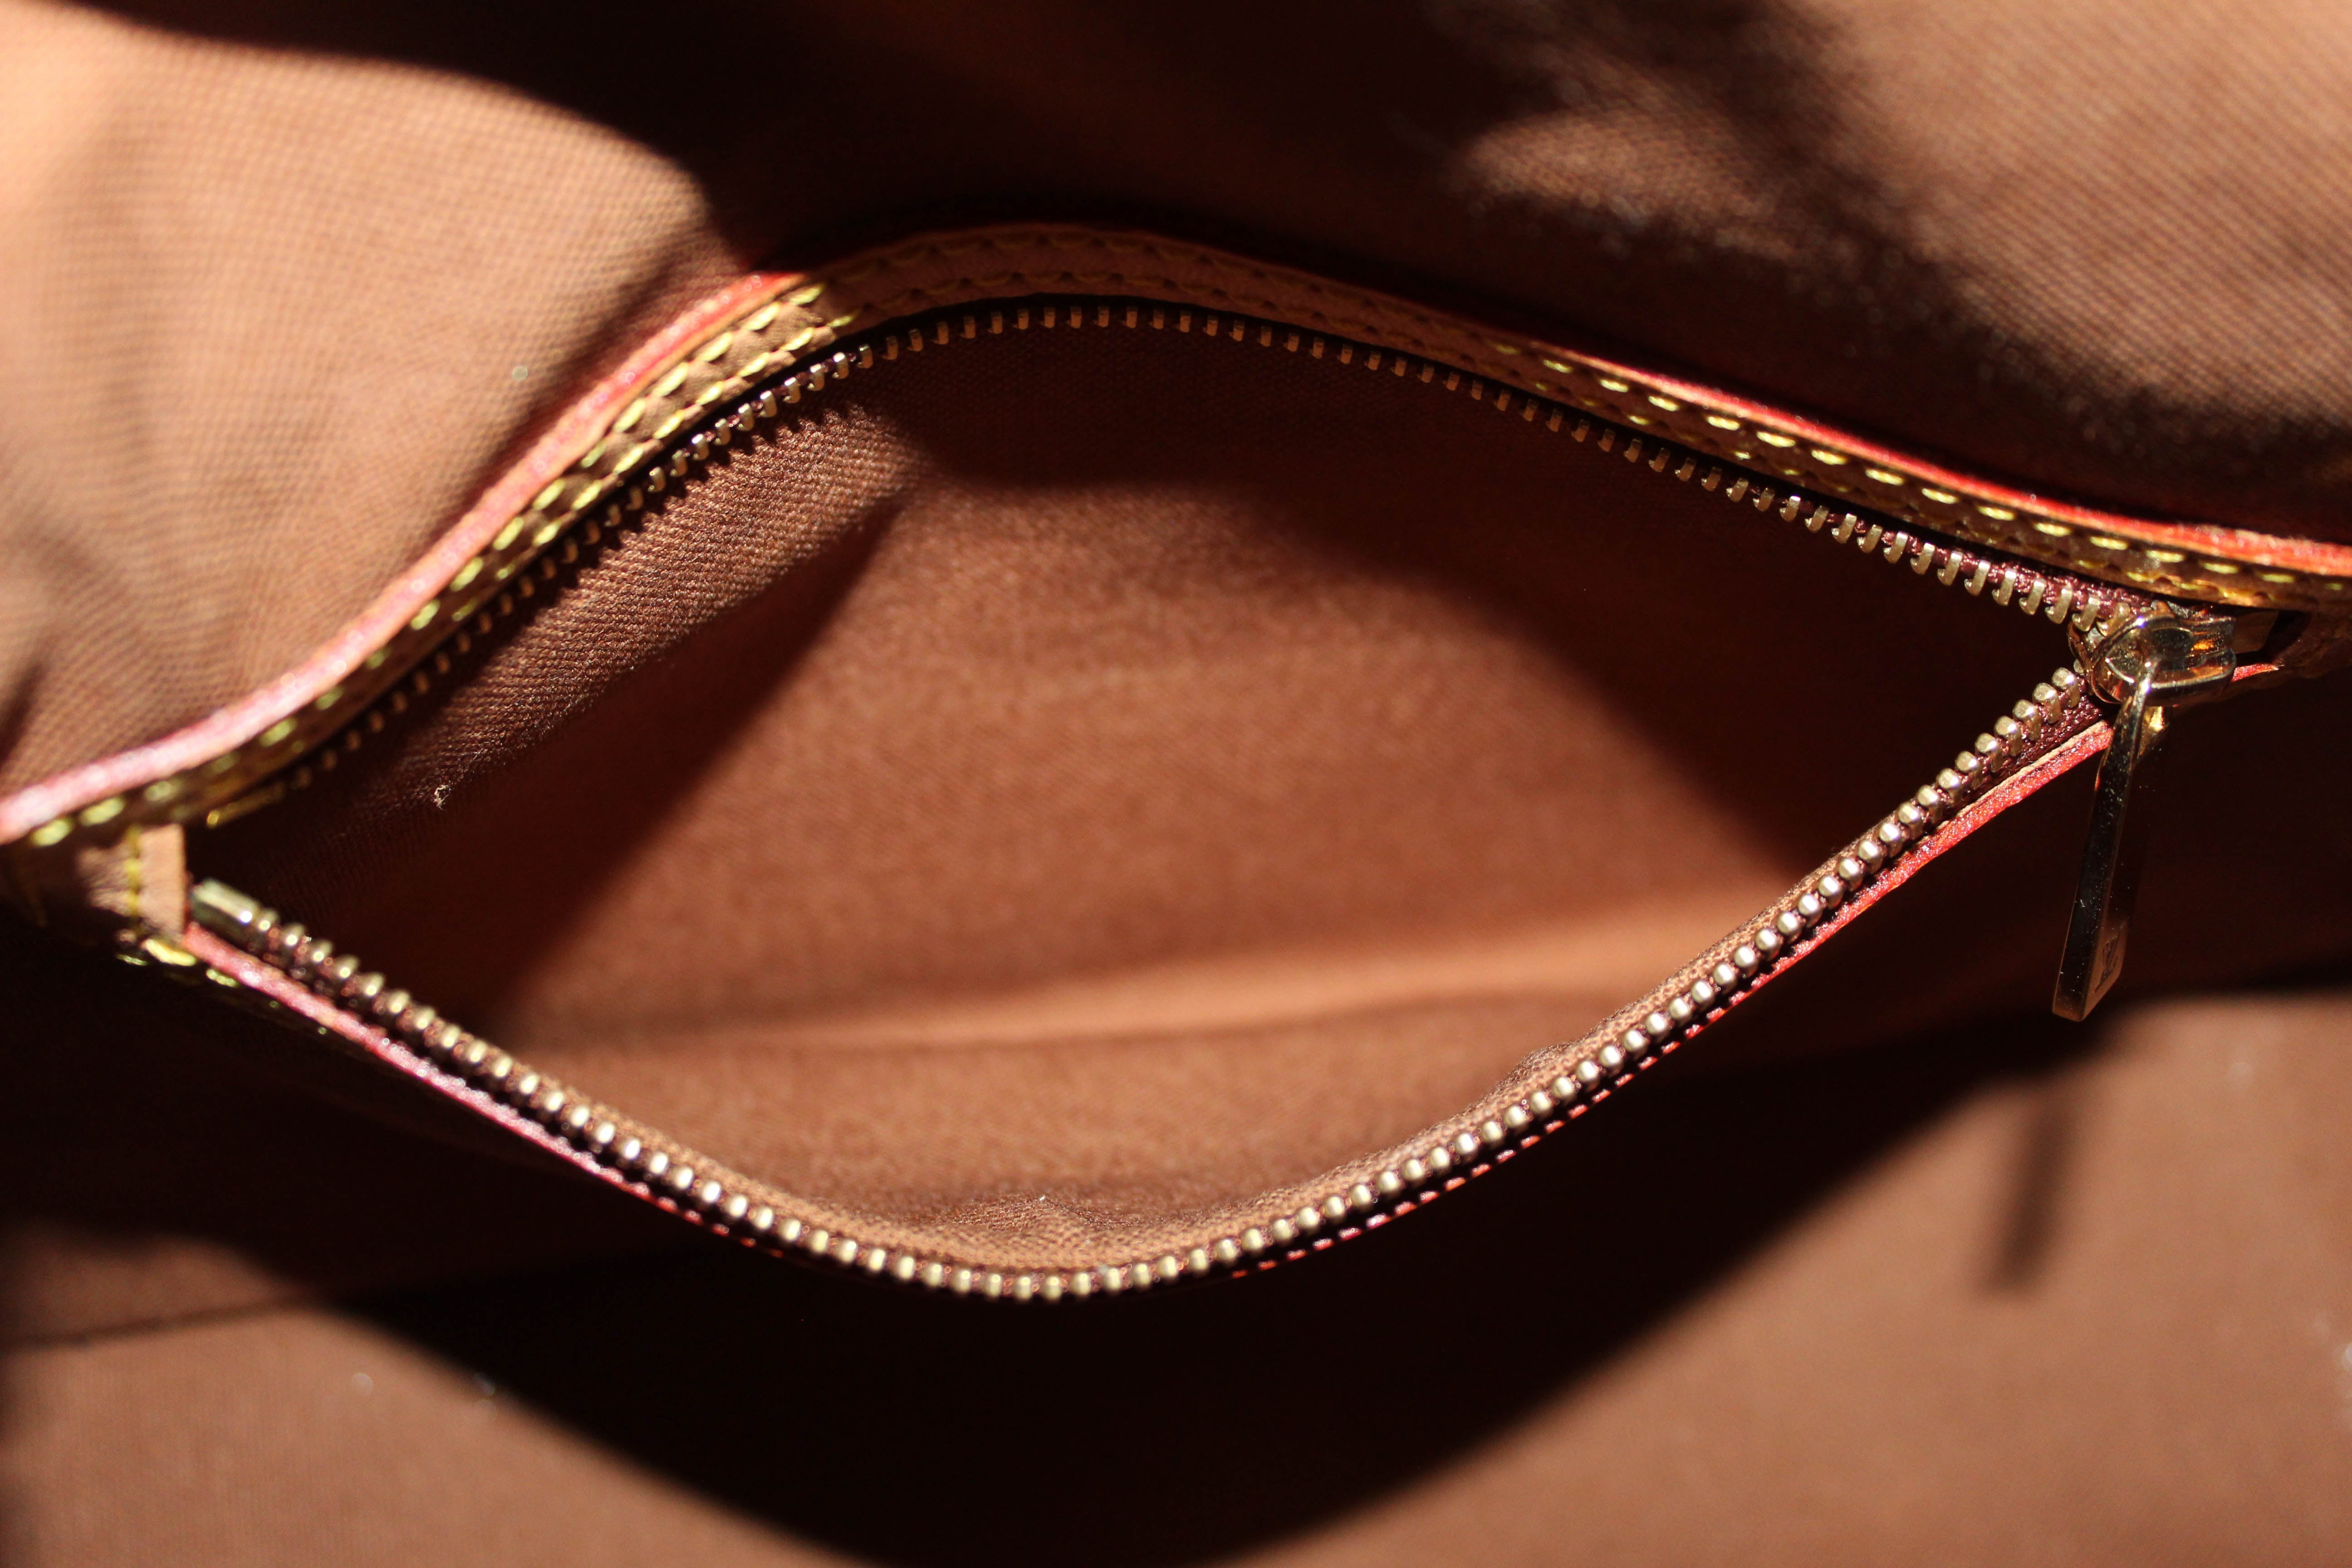 Authentic Louis Vuitton Classic Monogram Mini Looping Tote Bag